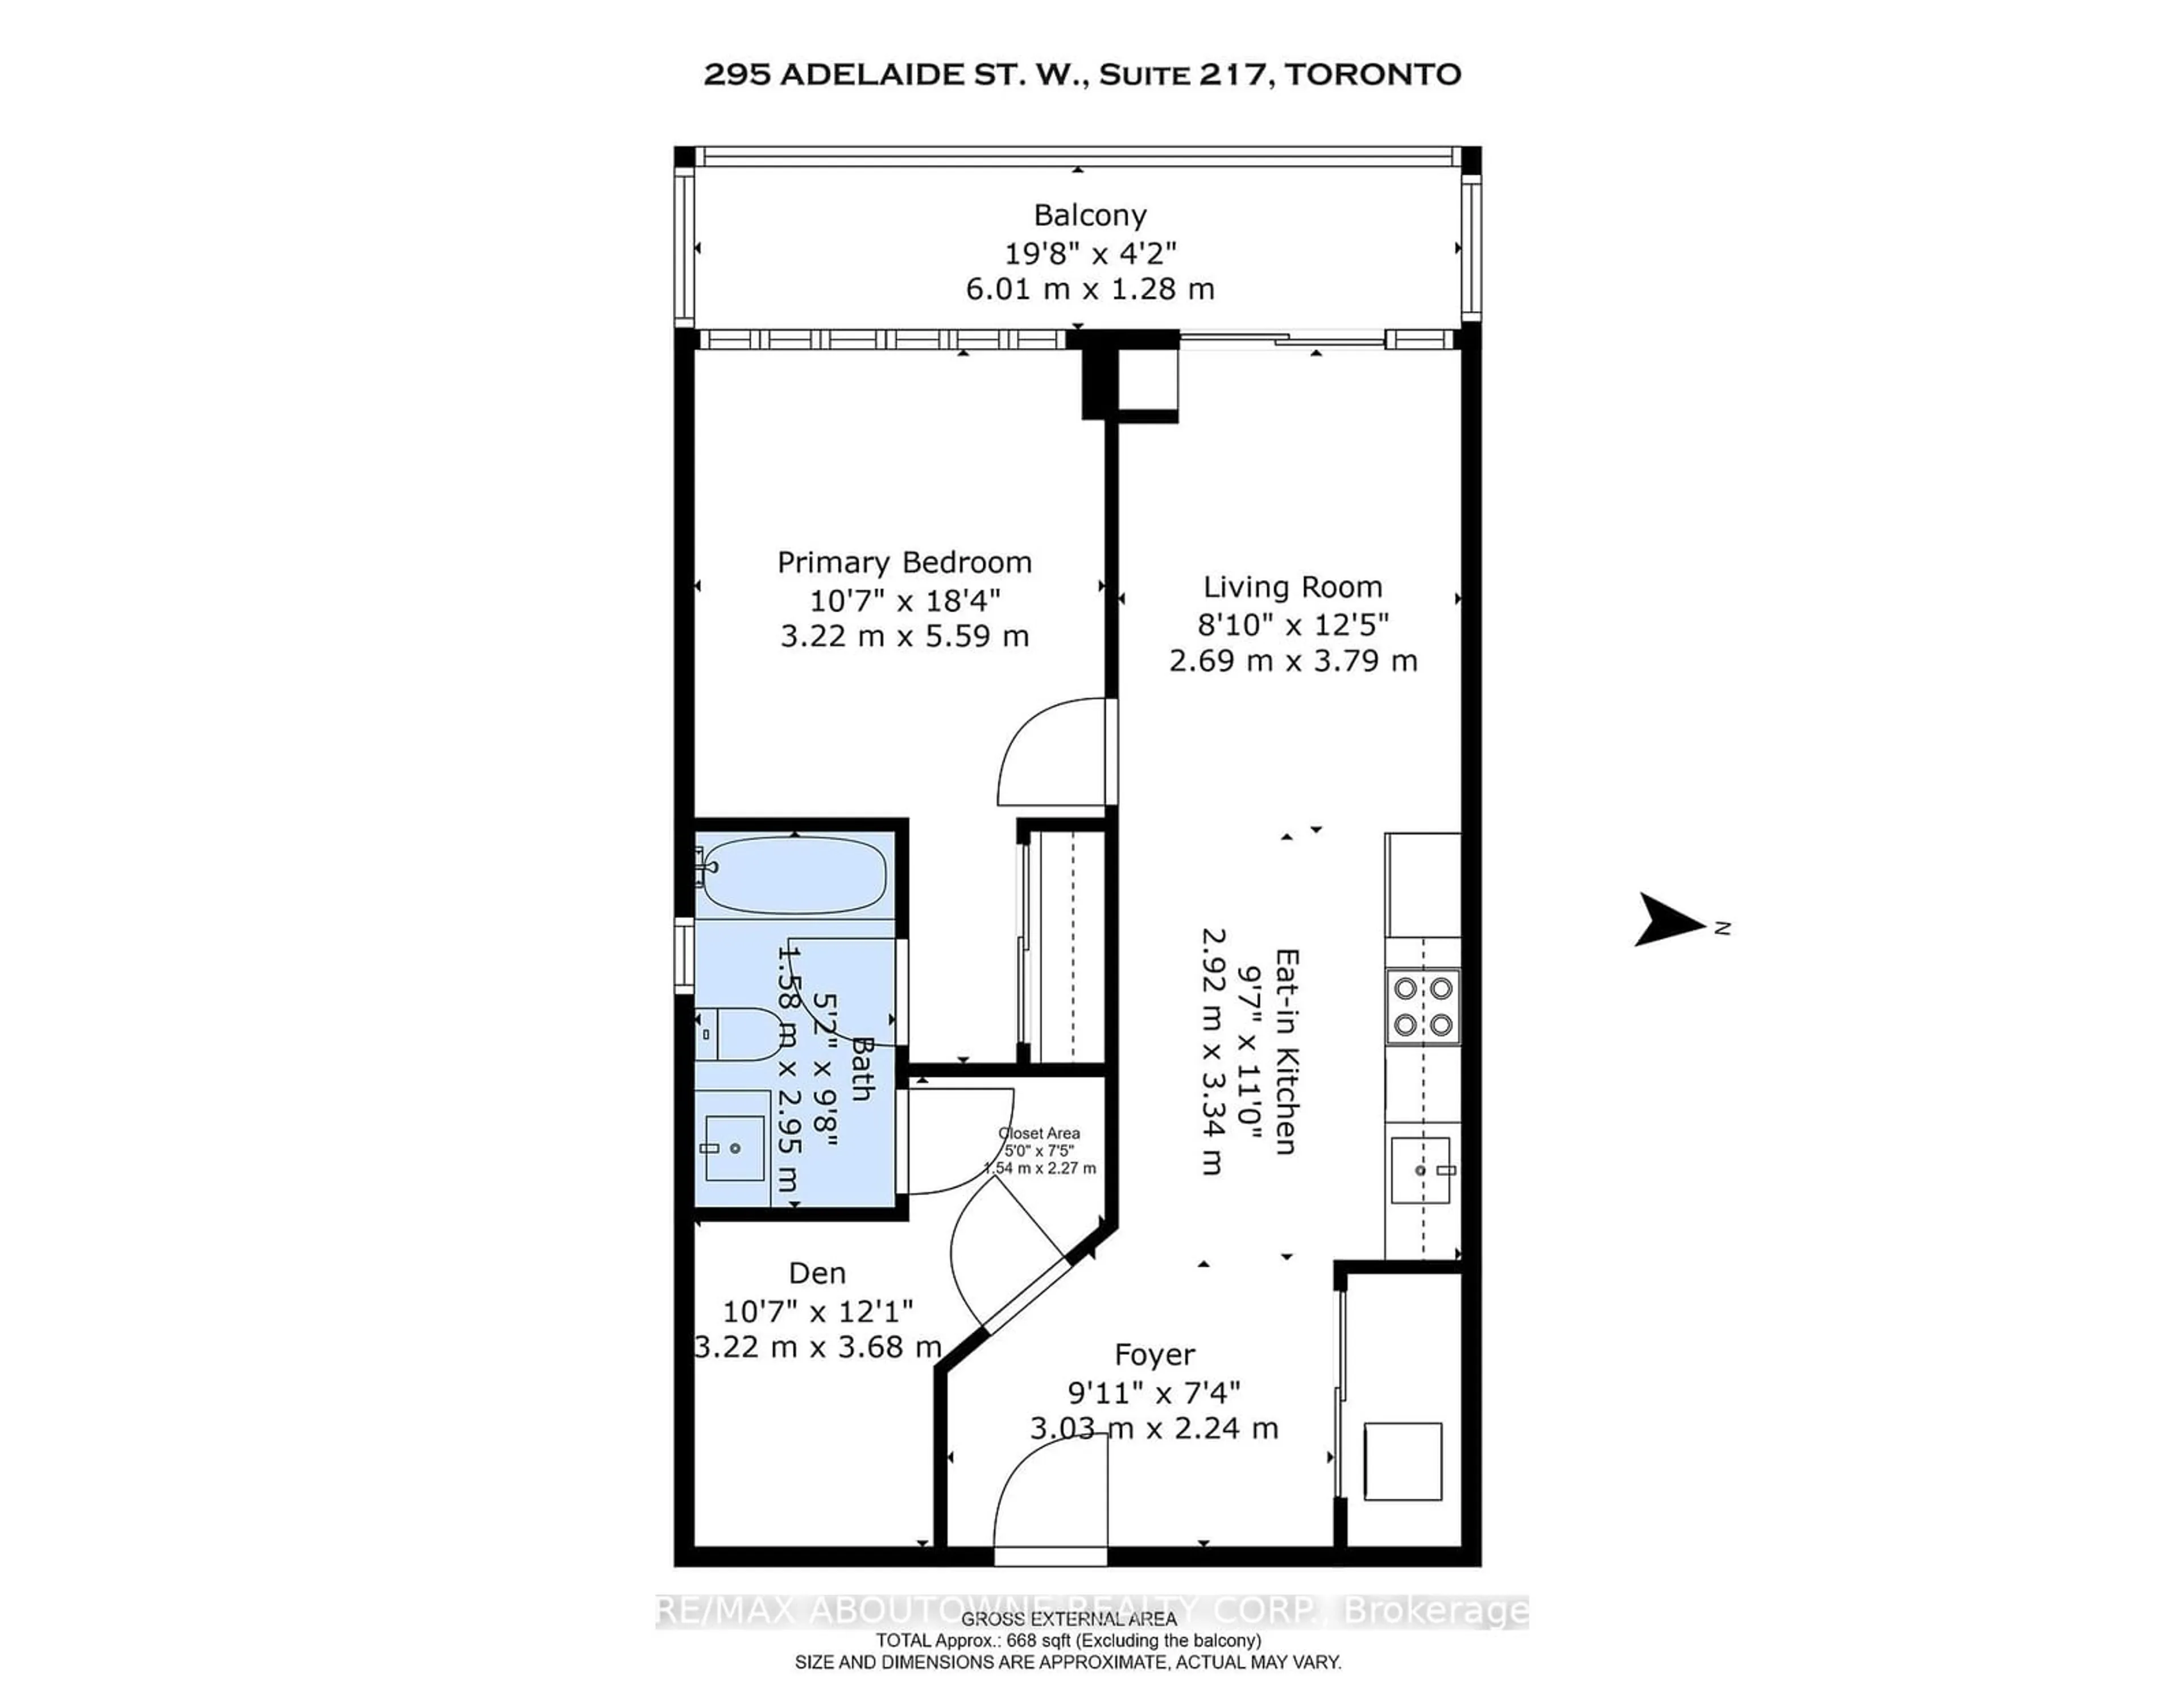 Floor plan for 295 Adelaide St #217, Toronto Ontario M5V 0L4